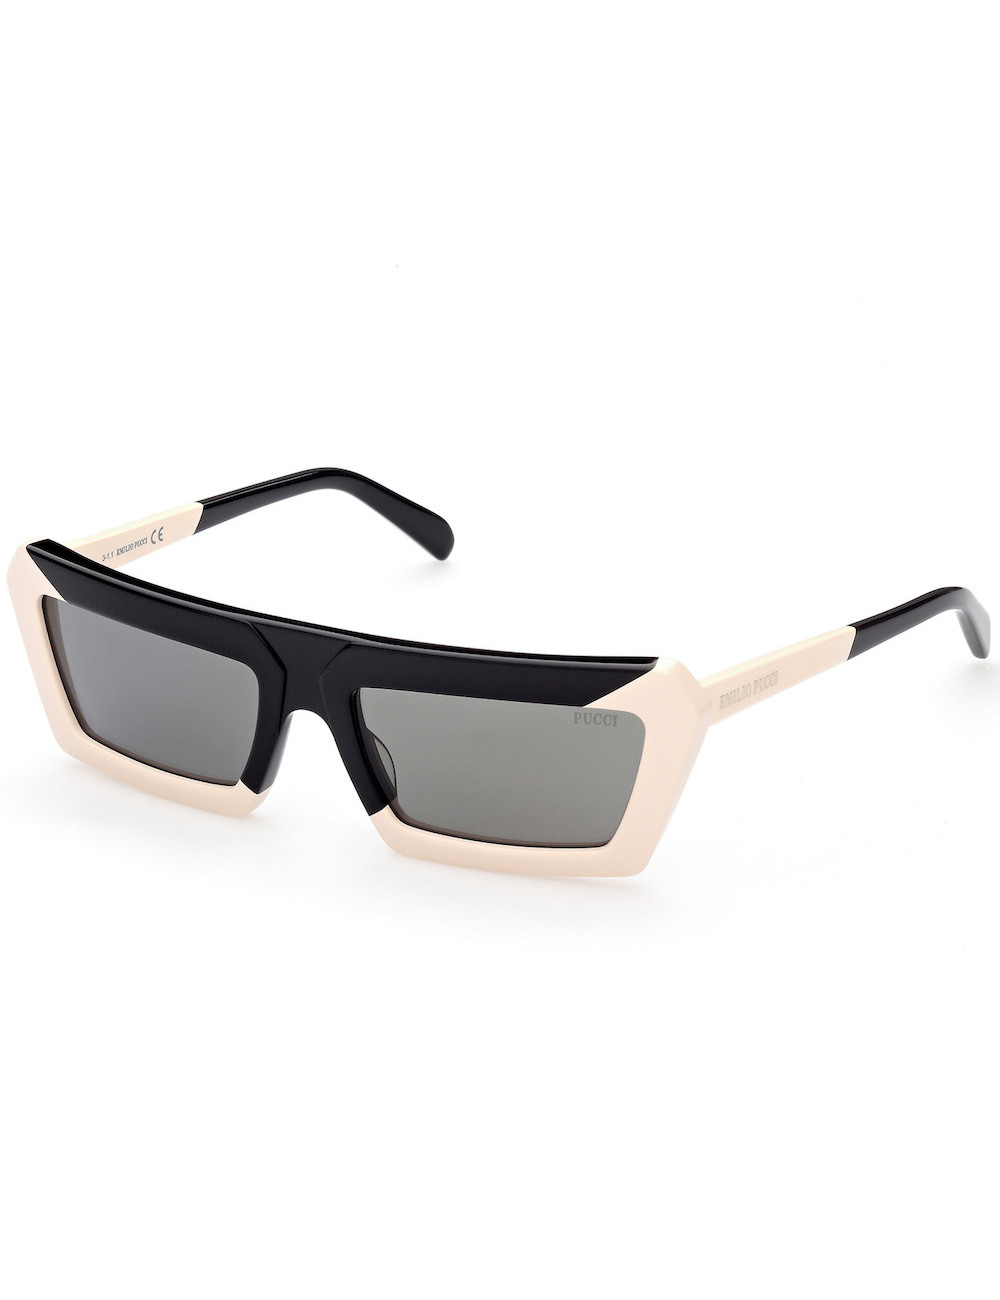 Emilio Pucci Sunglasses for Women